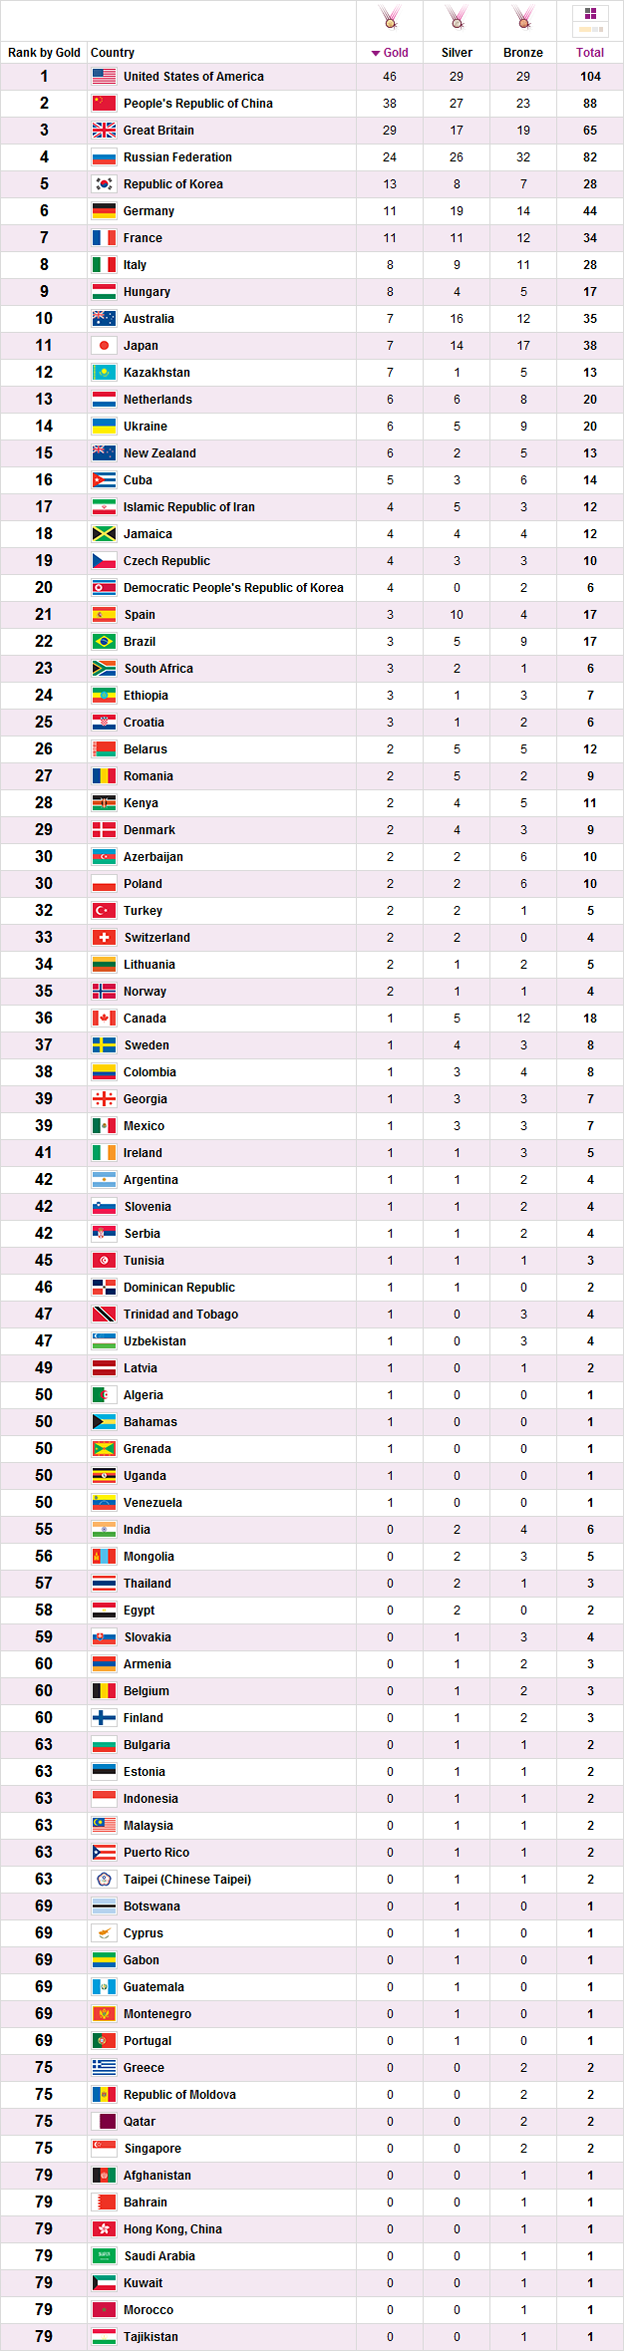 Jogos Olímpicos 2012 - medalhas e classificação final